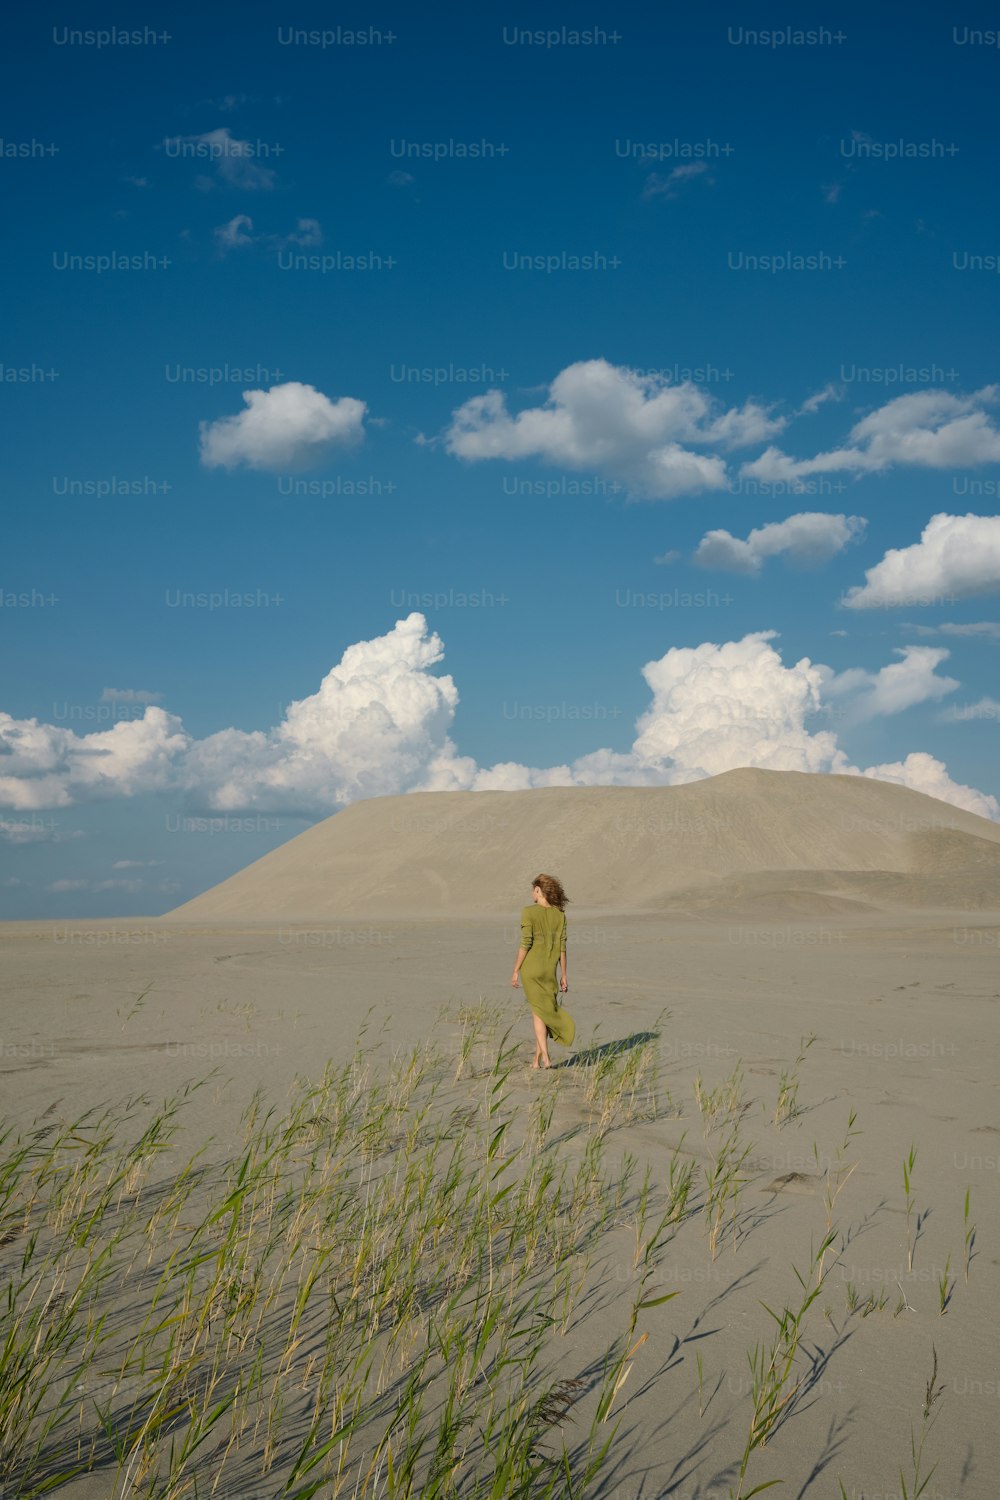 a woman walking across a sandy beach next to tall grass